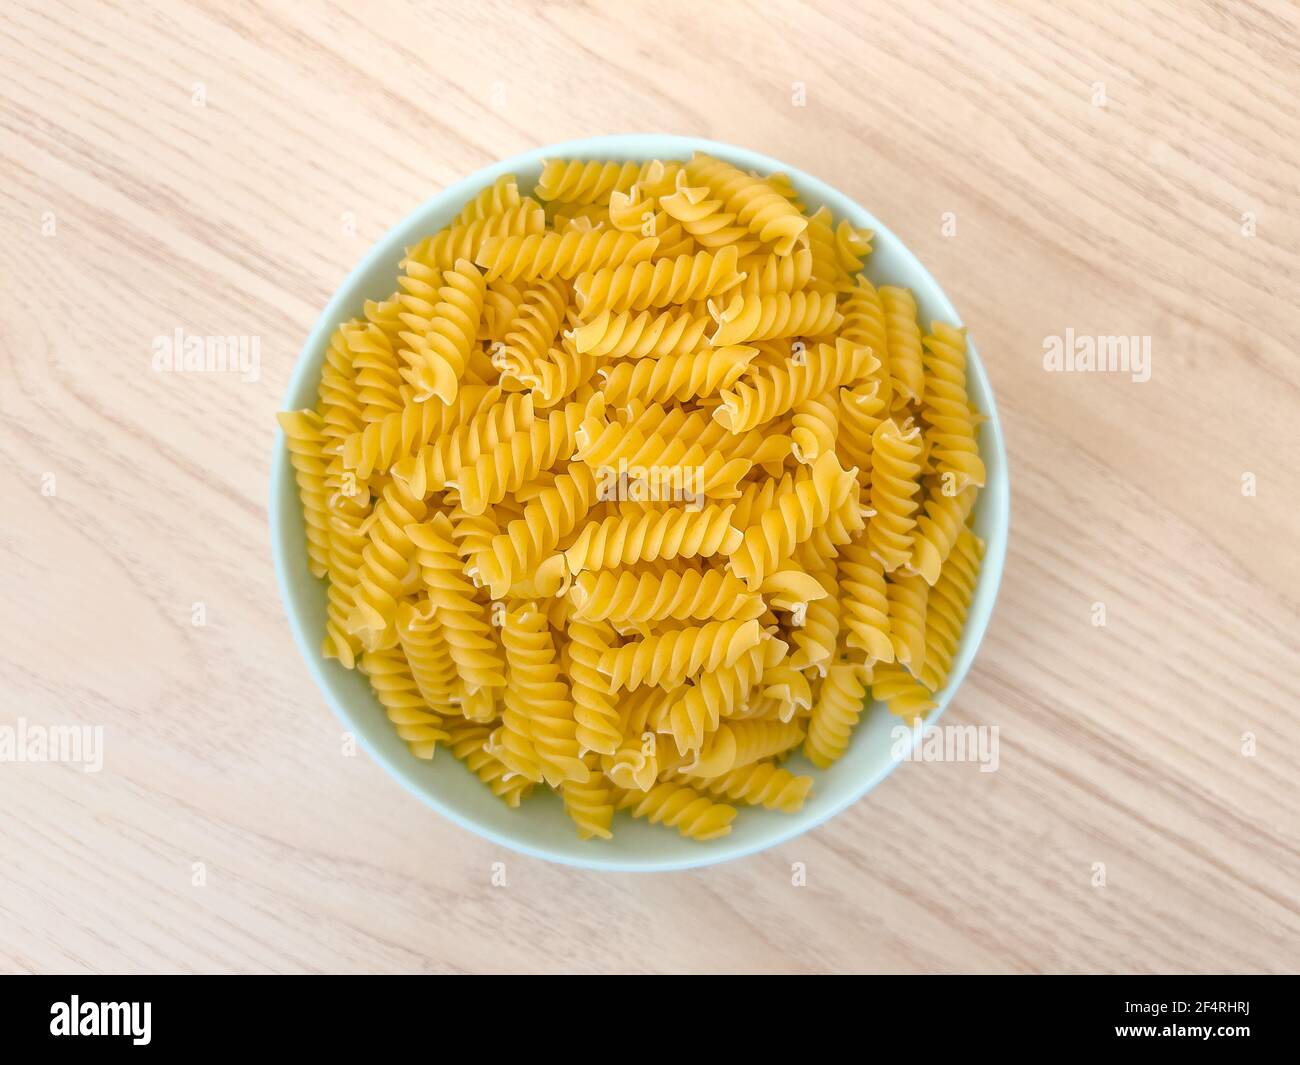 Pâtes italiennes sèches crues en forme de spirale dans un bol sur une table en bois dans la cuisine. La nourriture. Vue de dessus. Macaroni non cuit. Banque D'Images